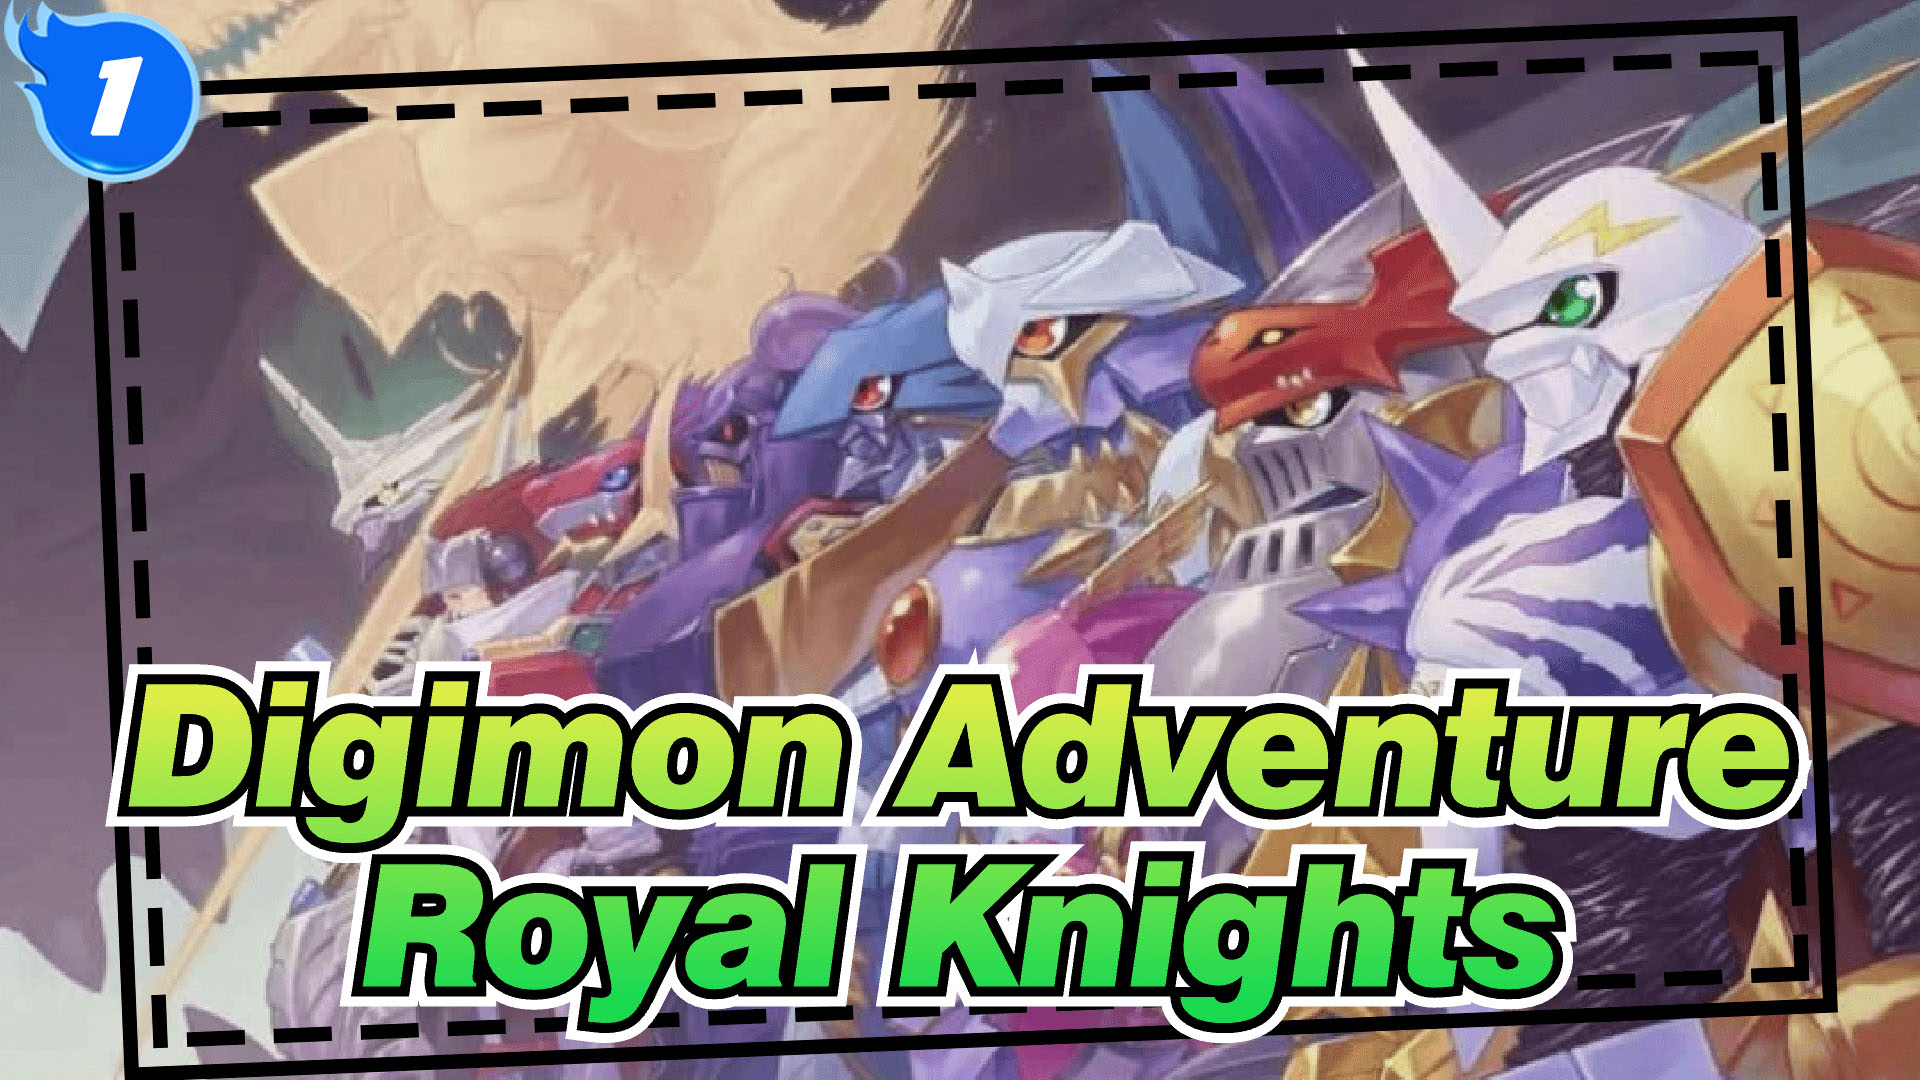 royal knights digimon